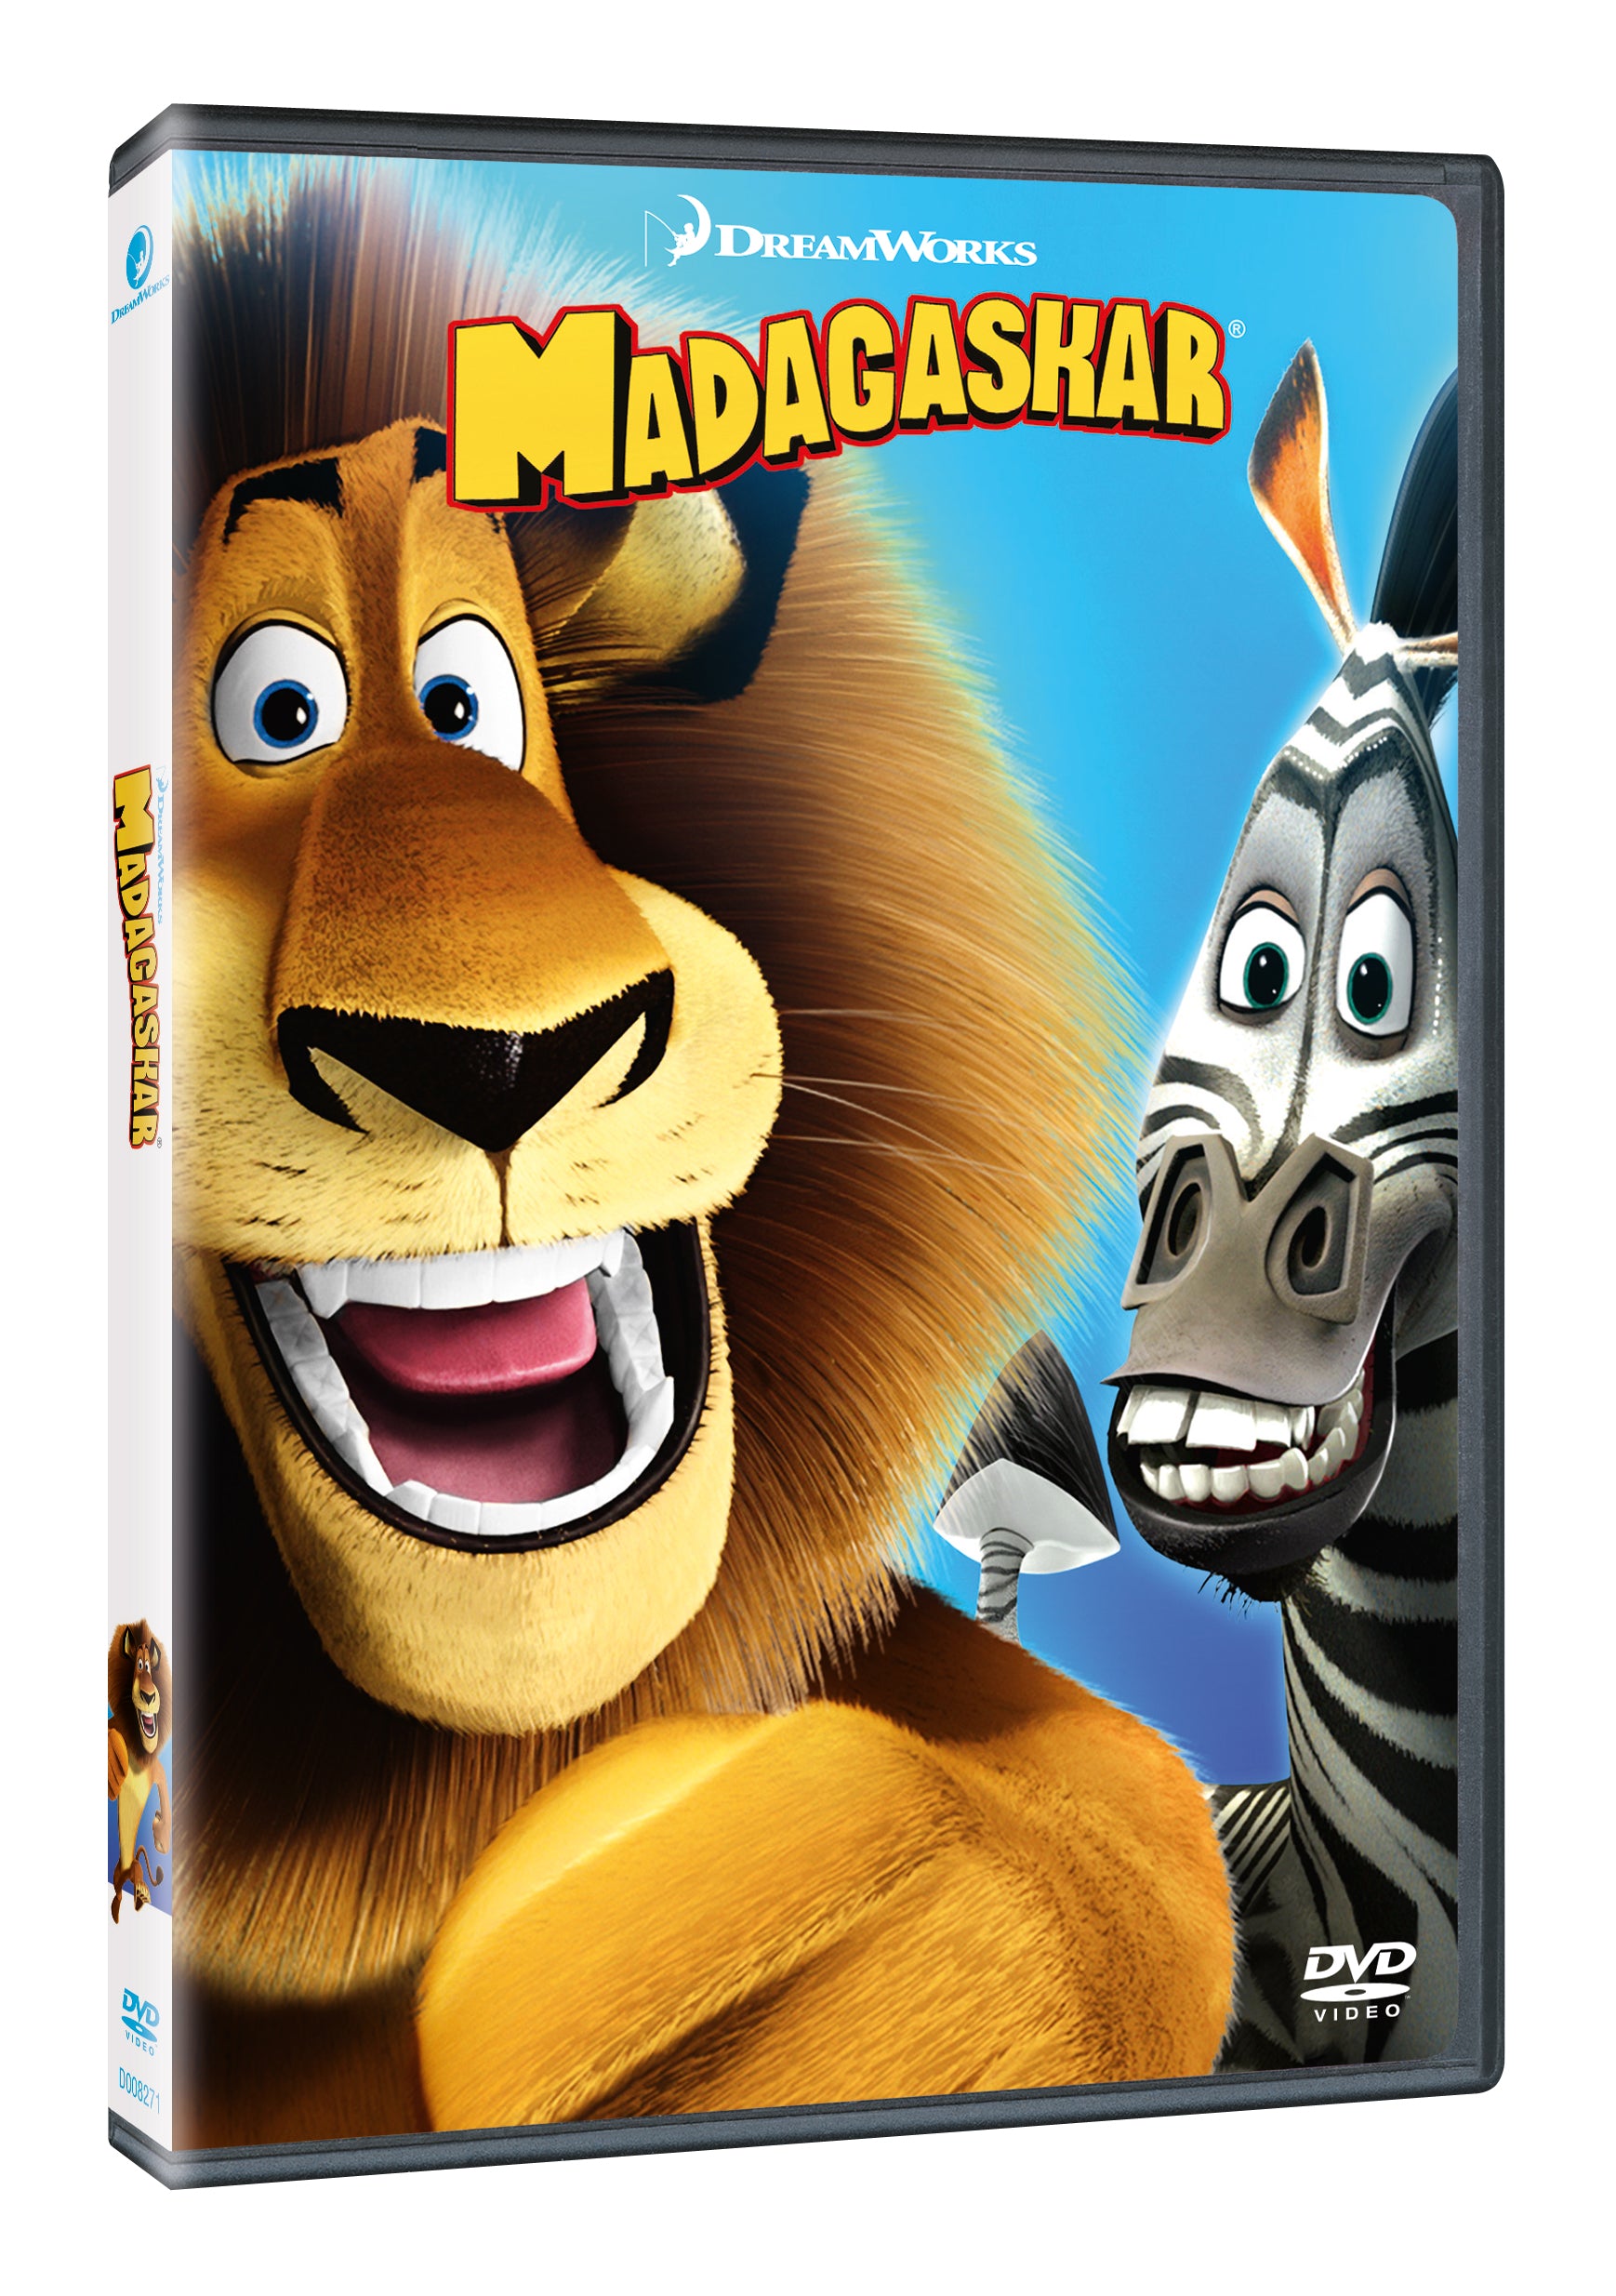 Madagaskar DVD / Madagascar